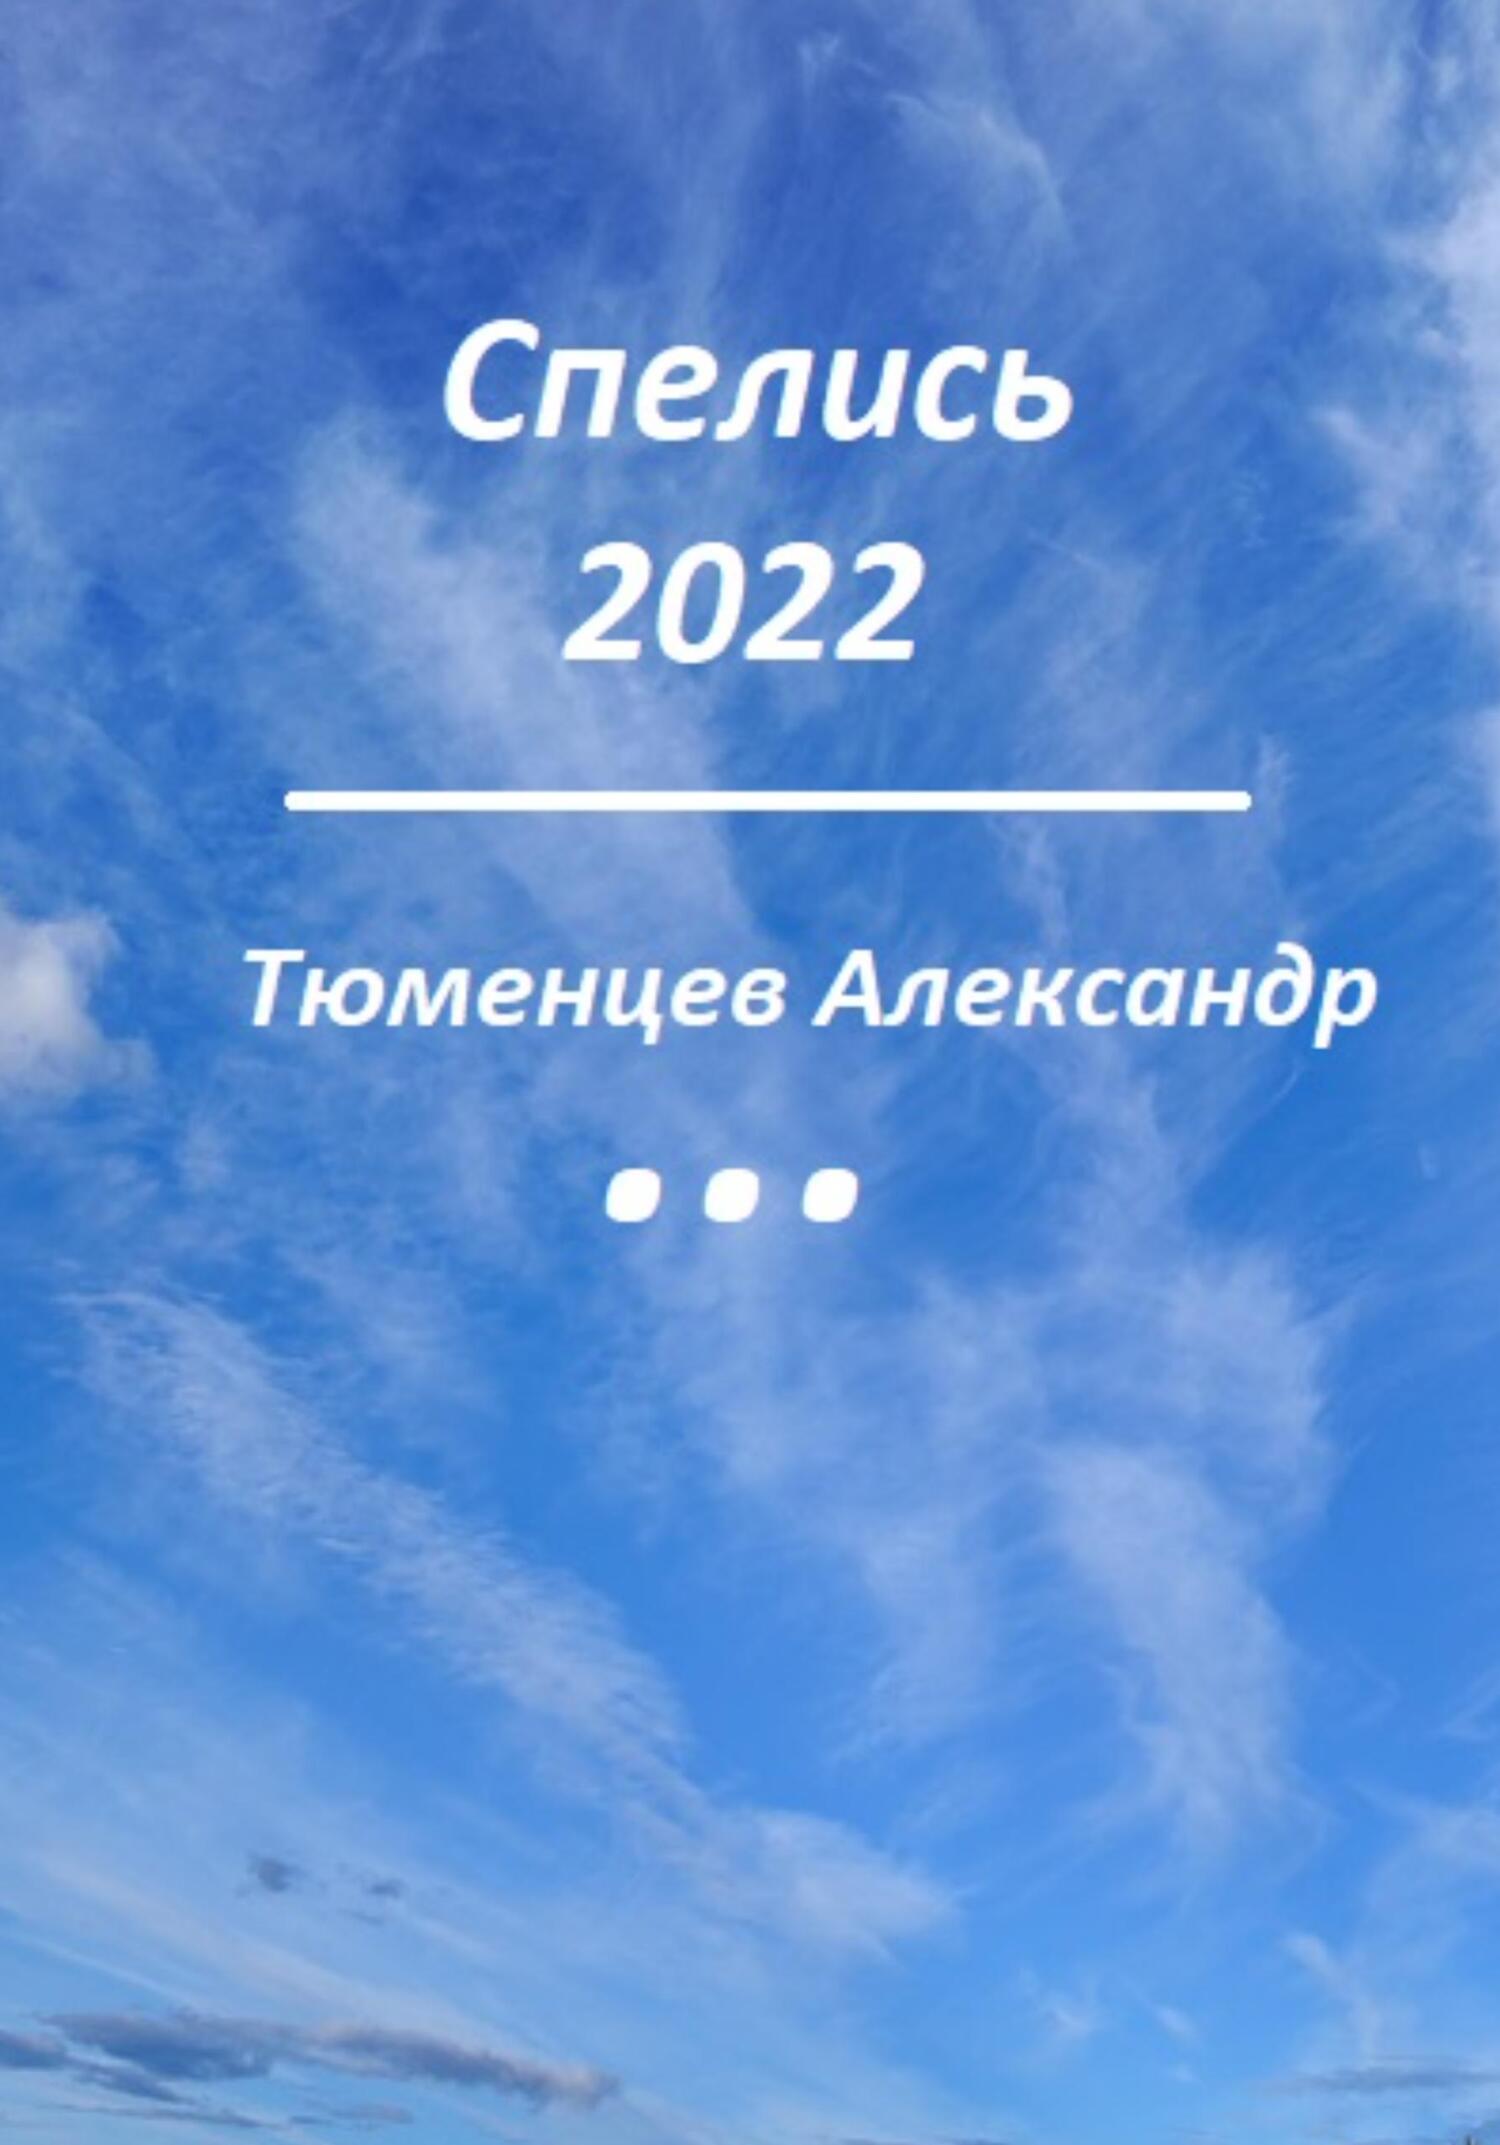 Спелись 2022 - Сандро Тюменцев